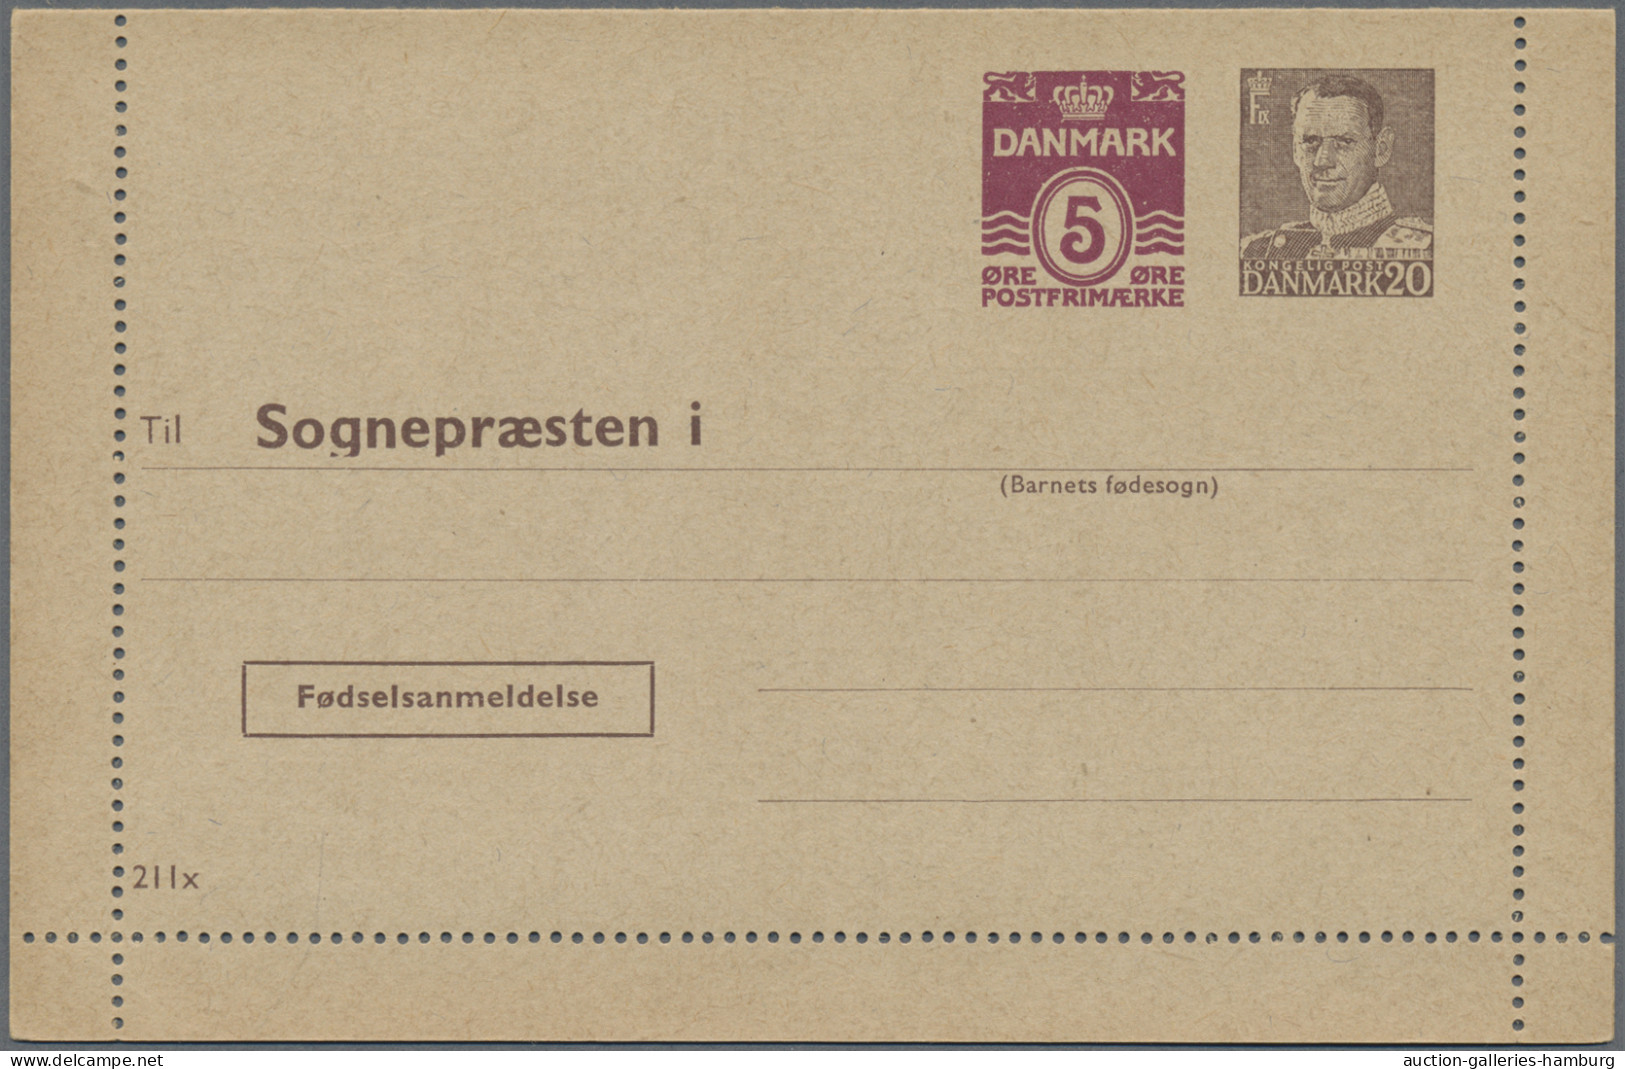 Denmark - postal stationery: 1953/1967, Letter Cards for Population Register, lo